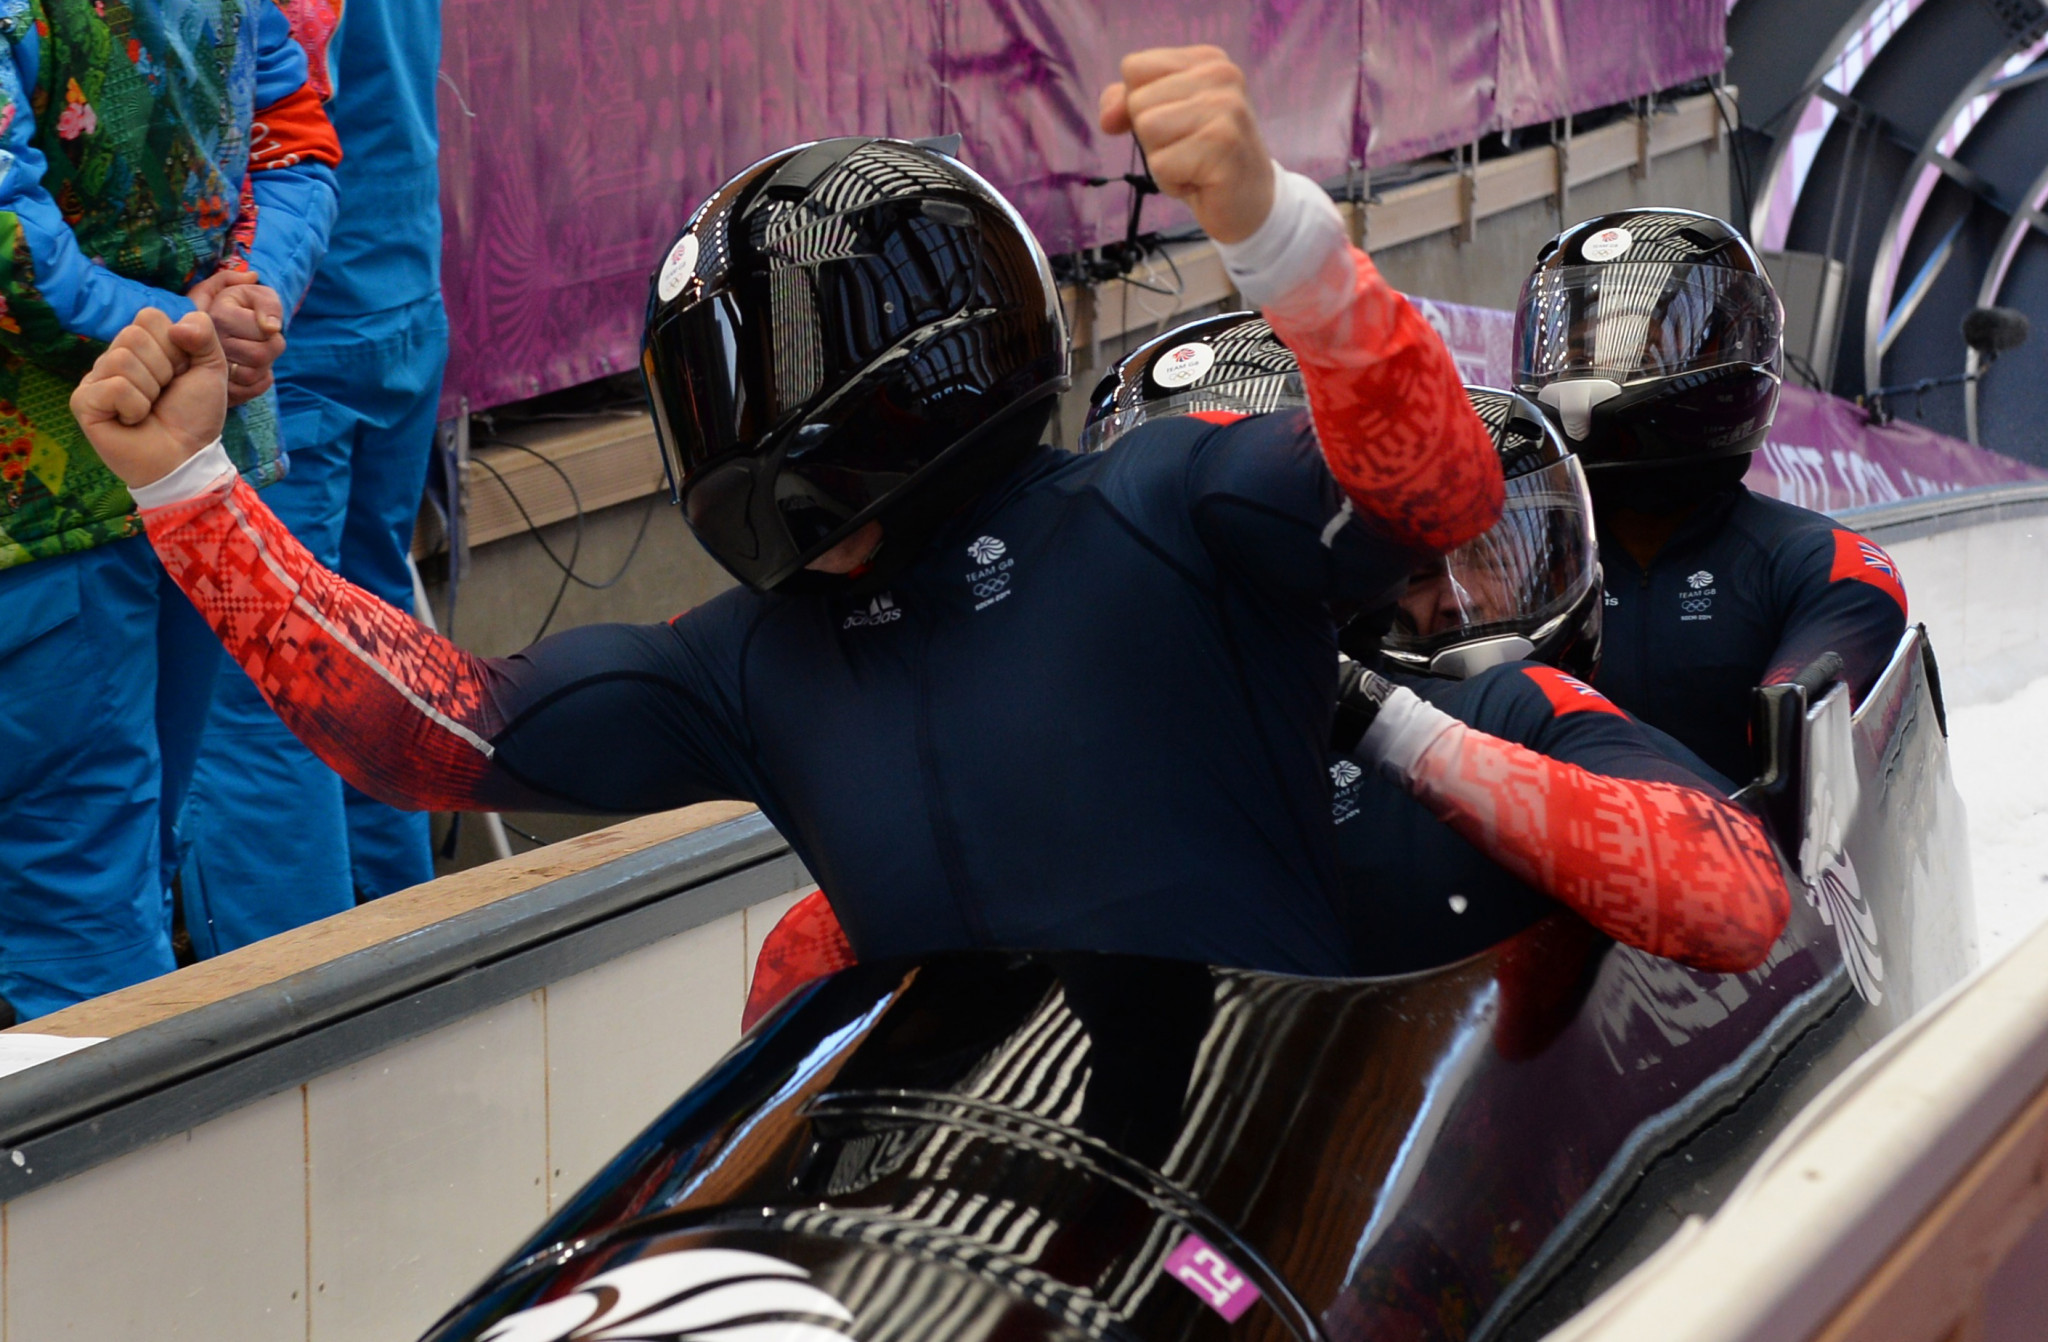 British bobsleigh team to receive Sochi 2014 bronze medals